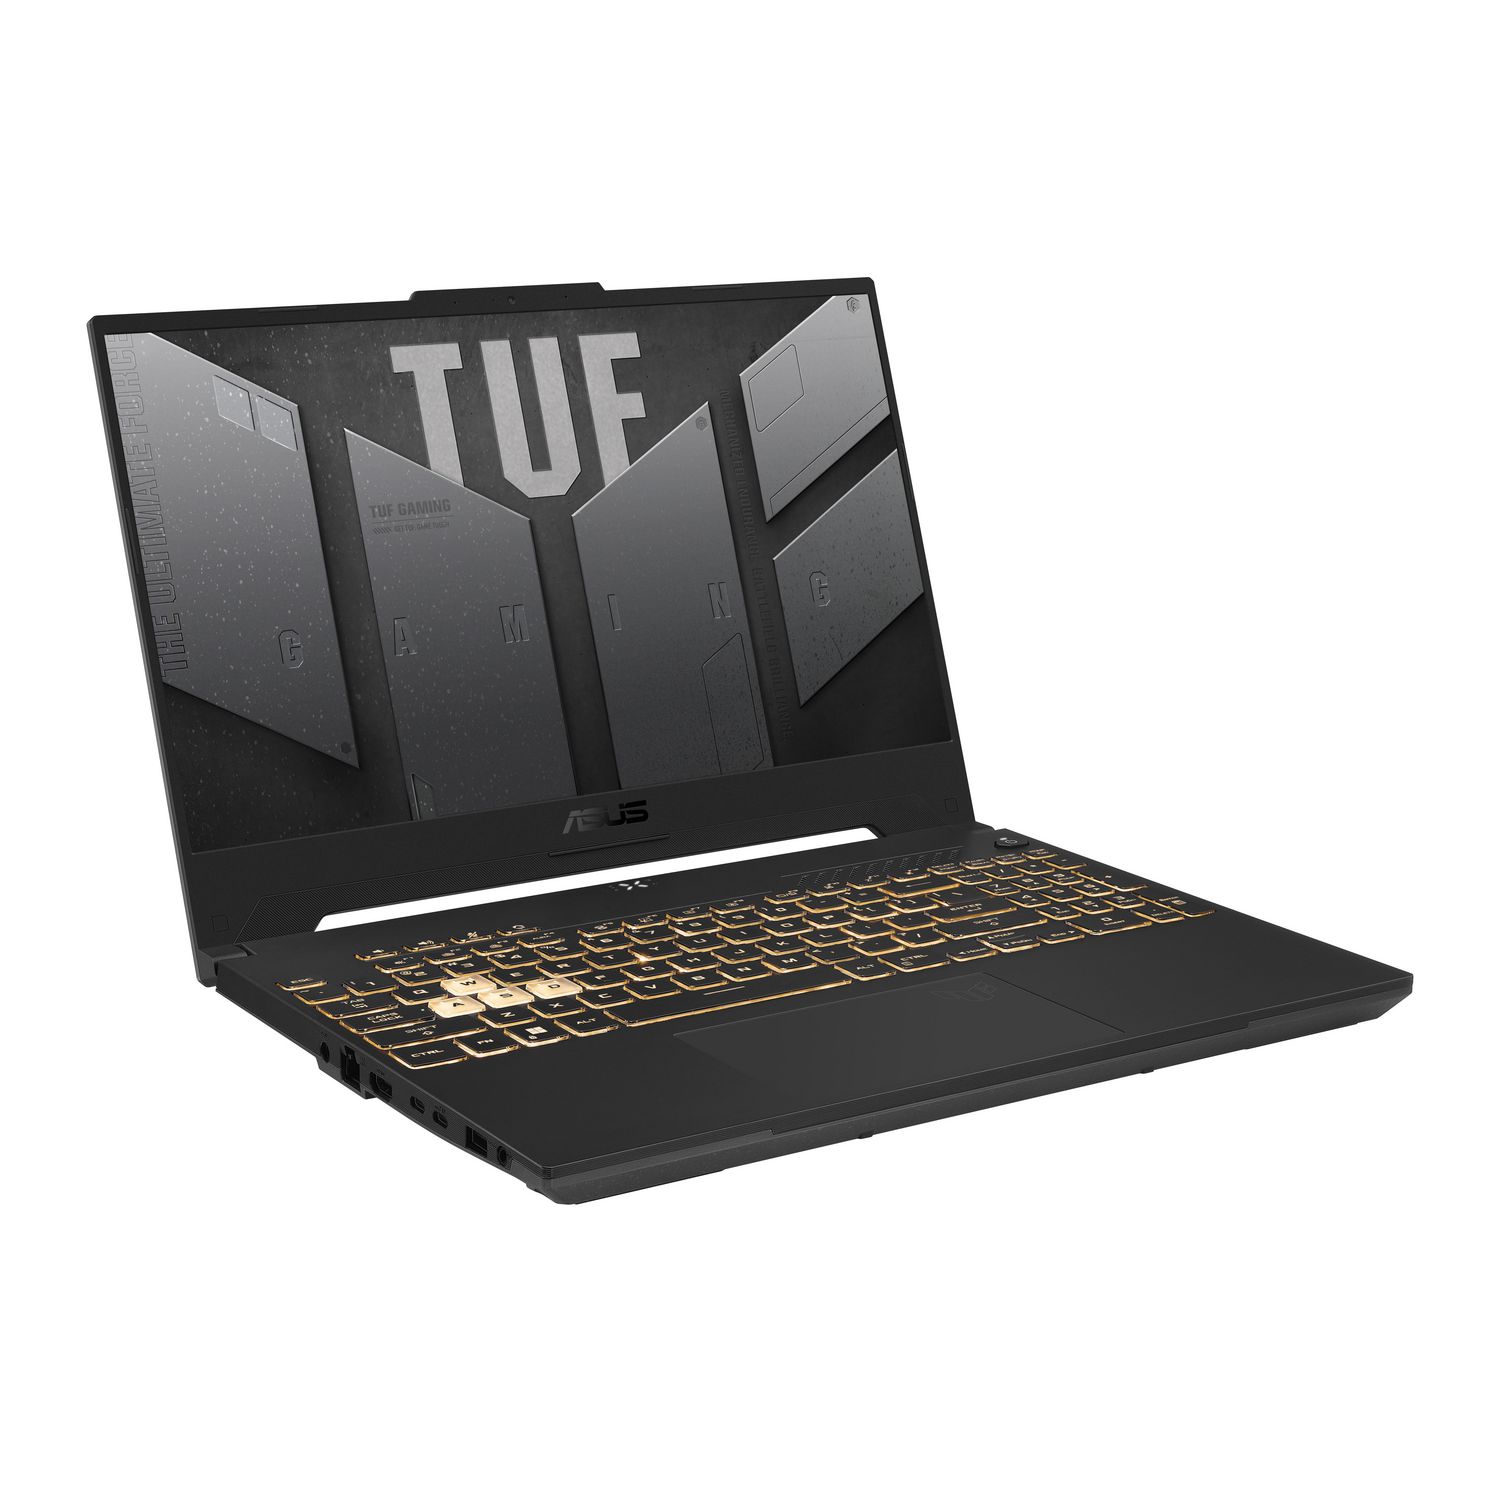 ASUS TUF Gaming F15 Gaming Laptop, 15.6” FHD 144Hz Display